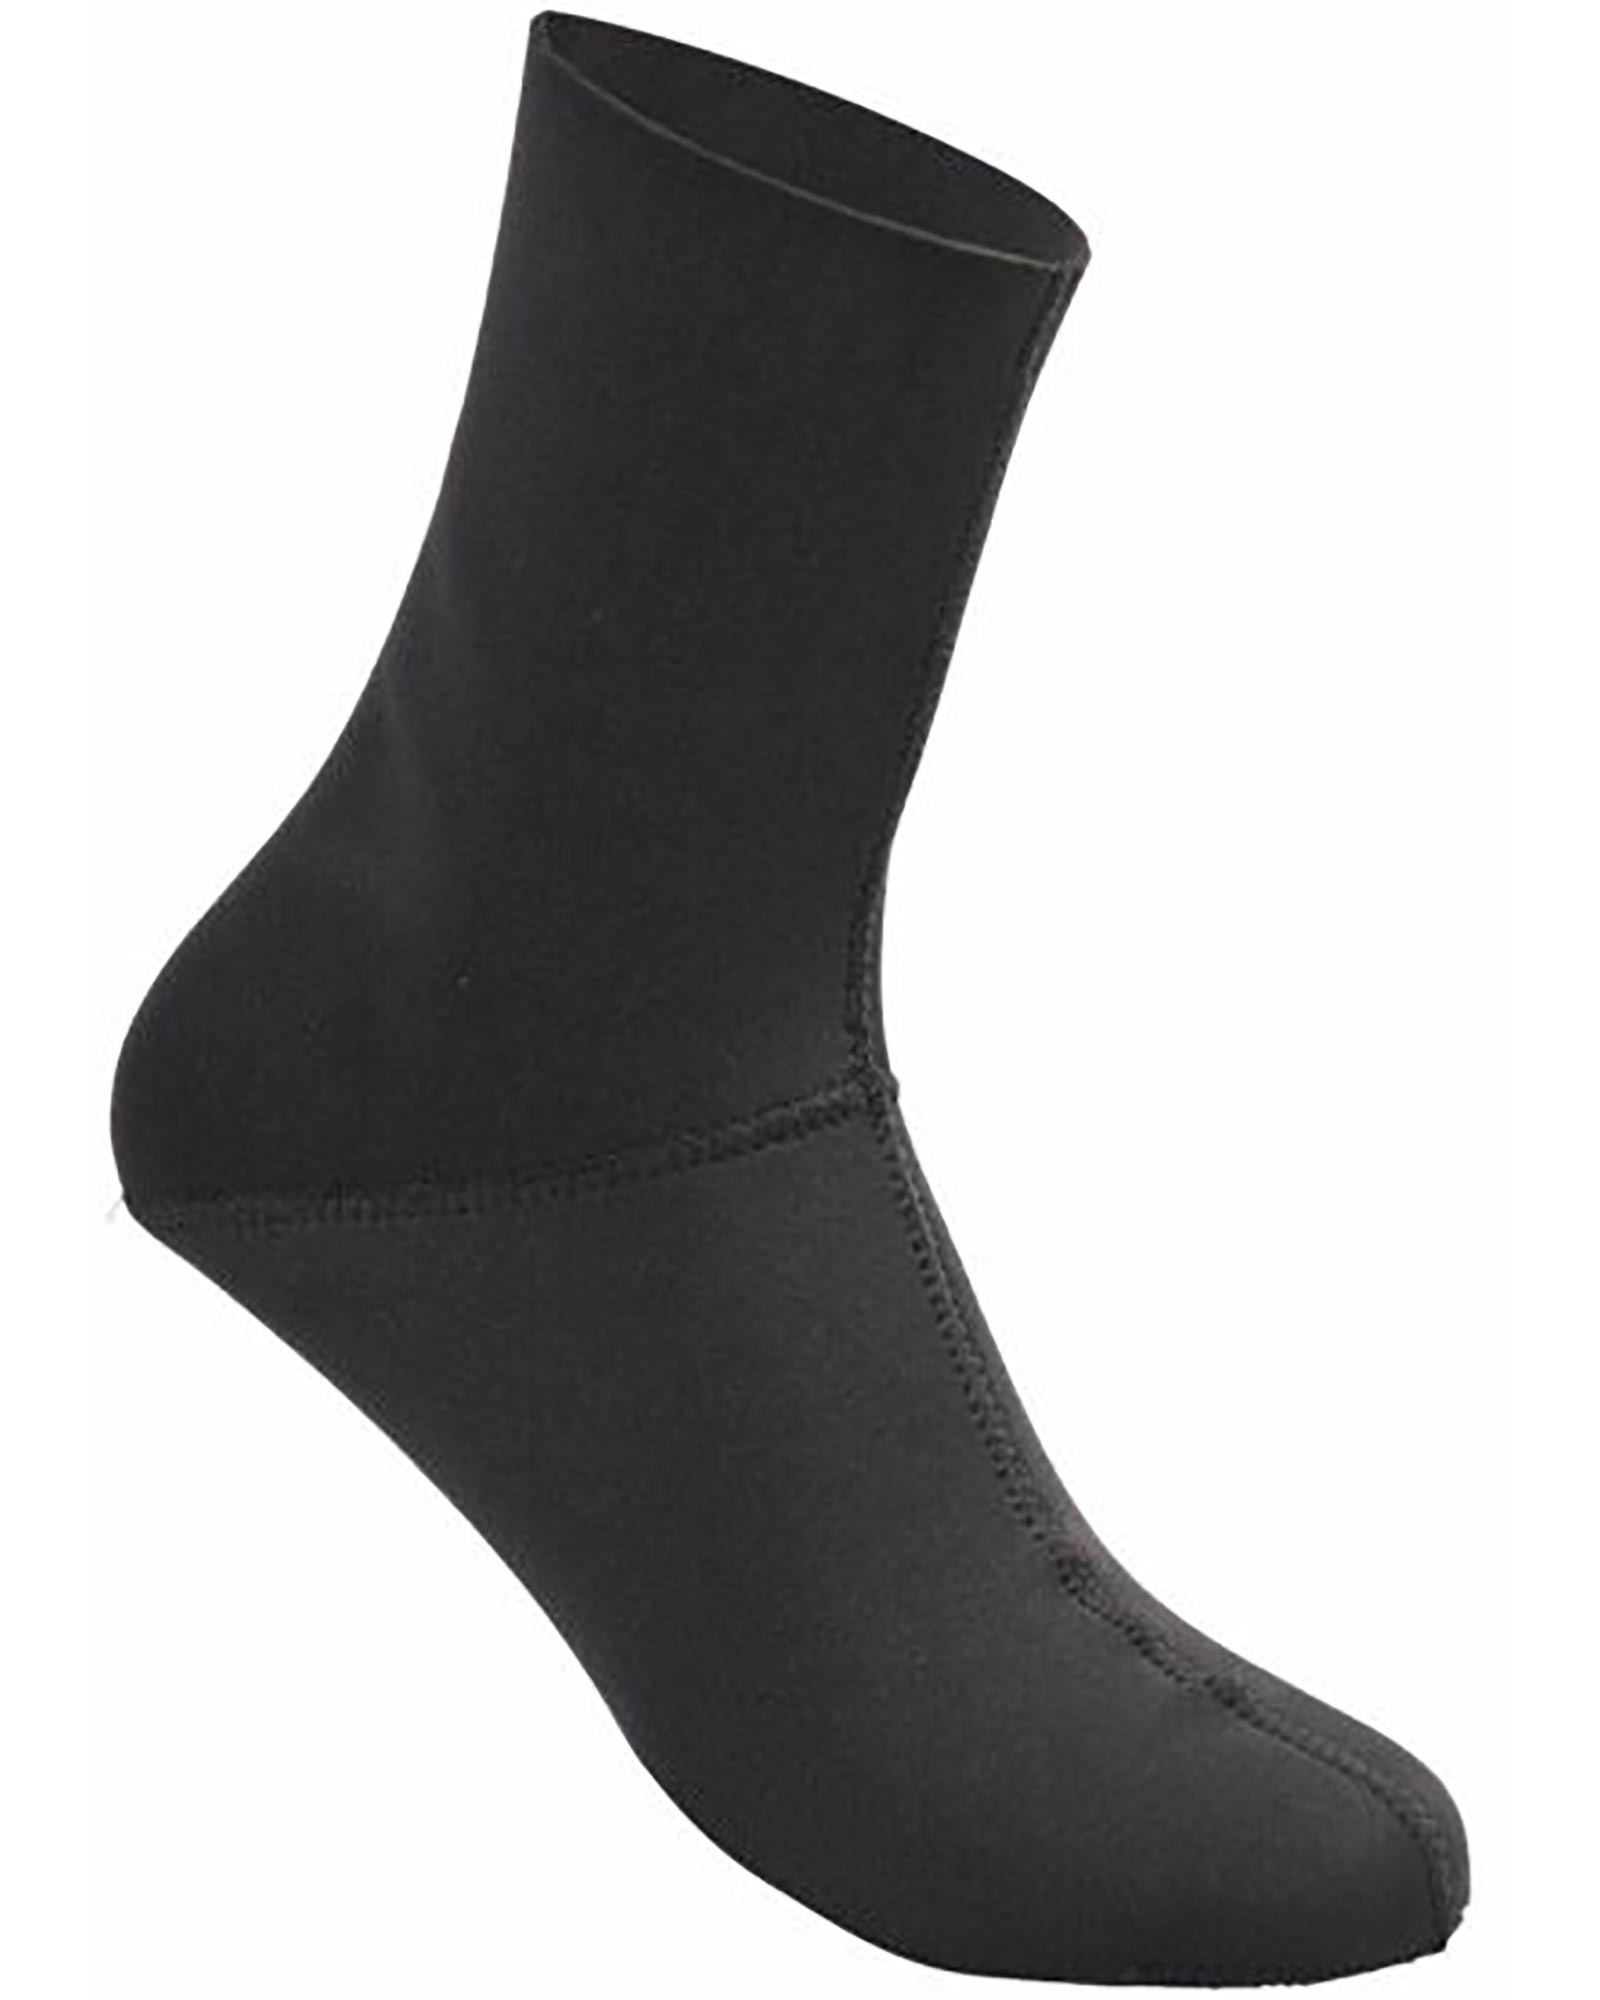 Inov 8 Extreme Thermo Socks - black M